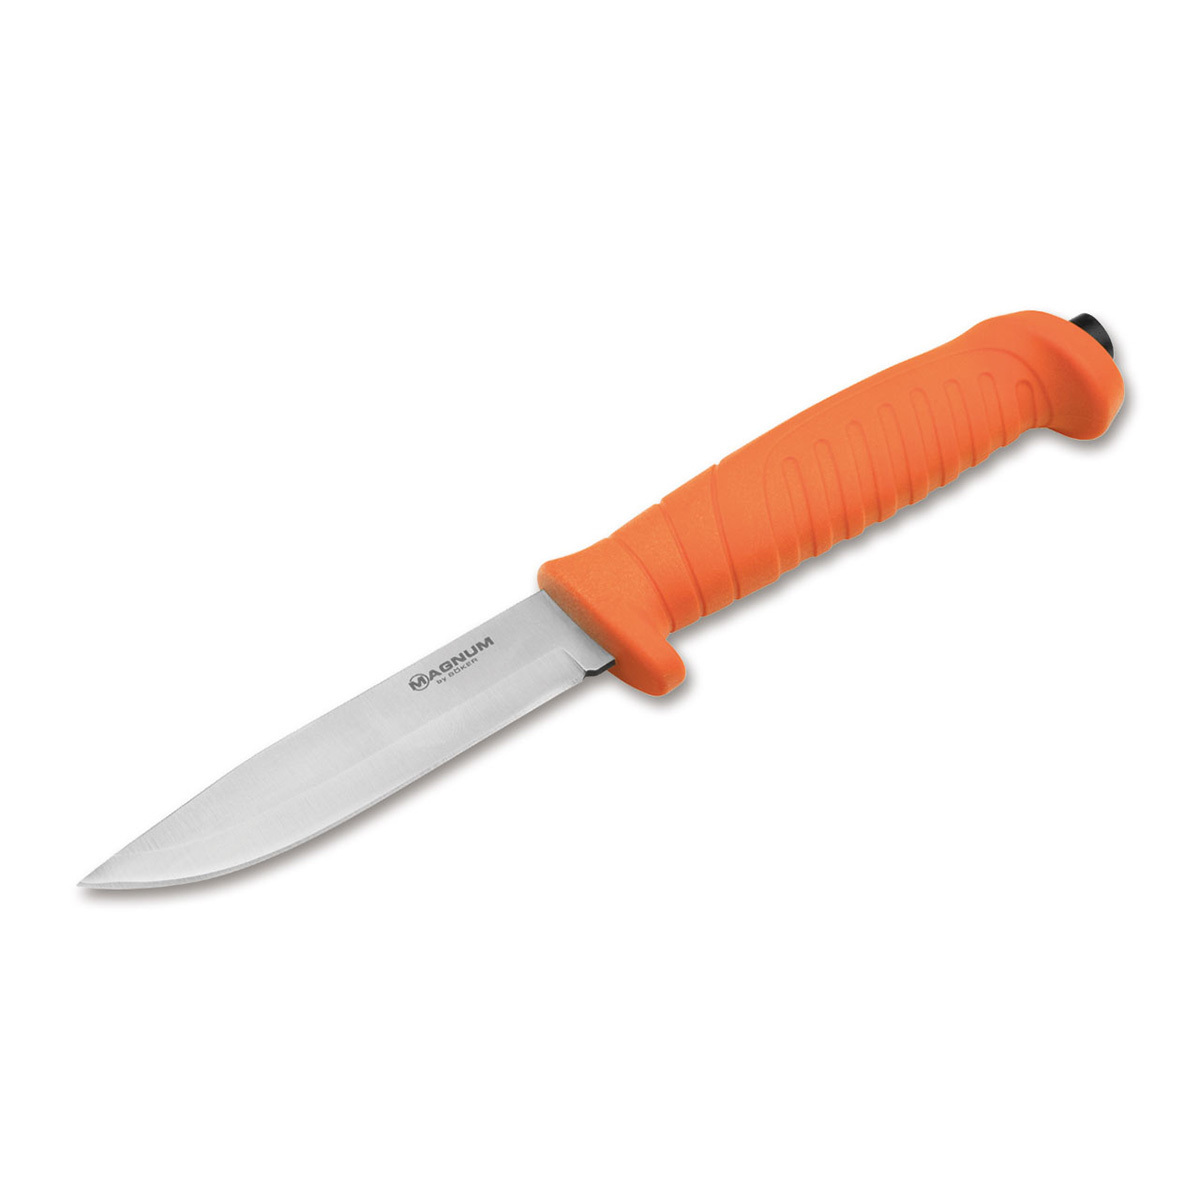 Нож с фиксированным клинком Boker Knivgar Sar Orange, сталь 420A, рукоять пластик нож с фиксированным клинком gerber river shorty